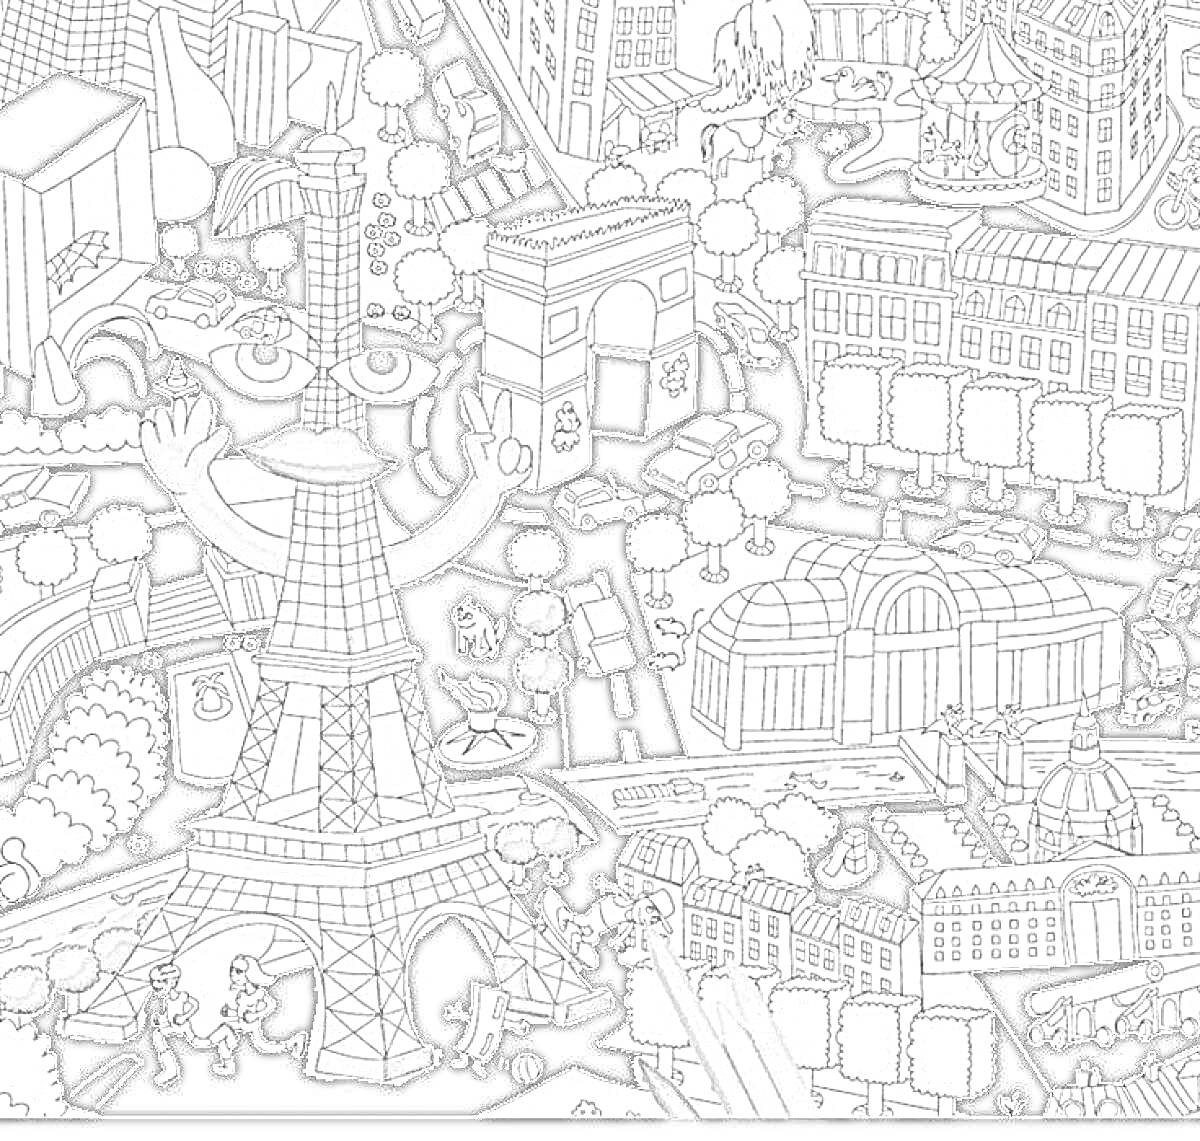 Раскраска Париж - Эйфелева башня с руками, Триумфальная арка, здания, улицы и деревья.